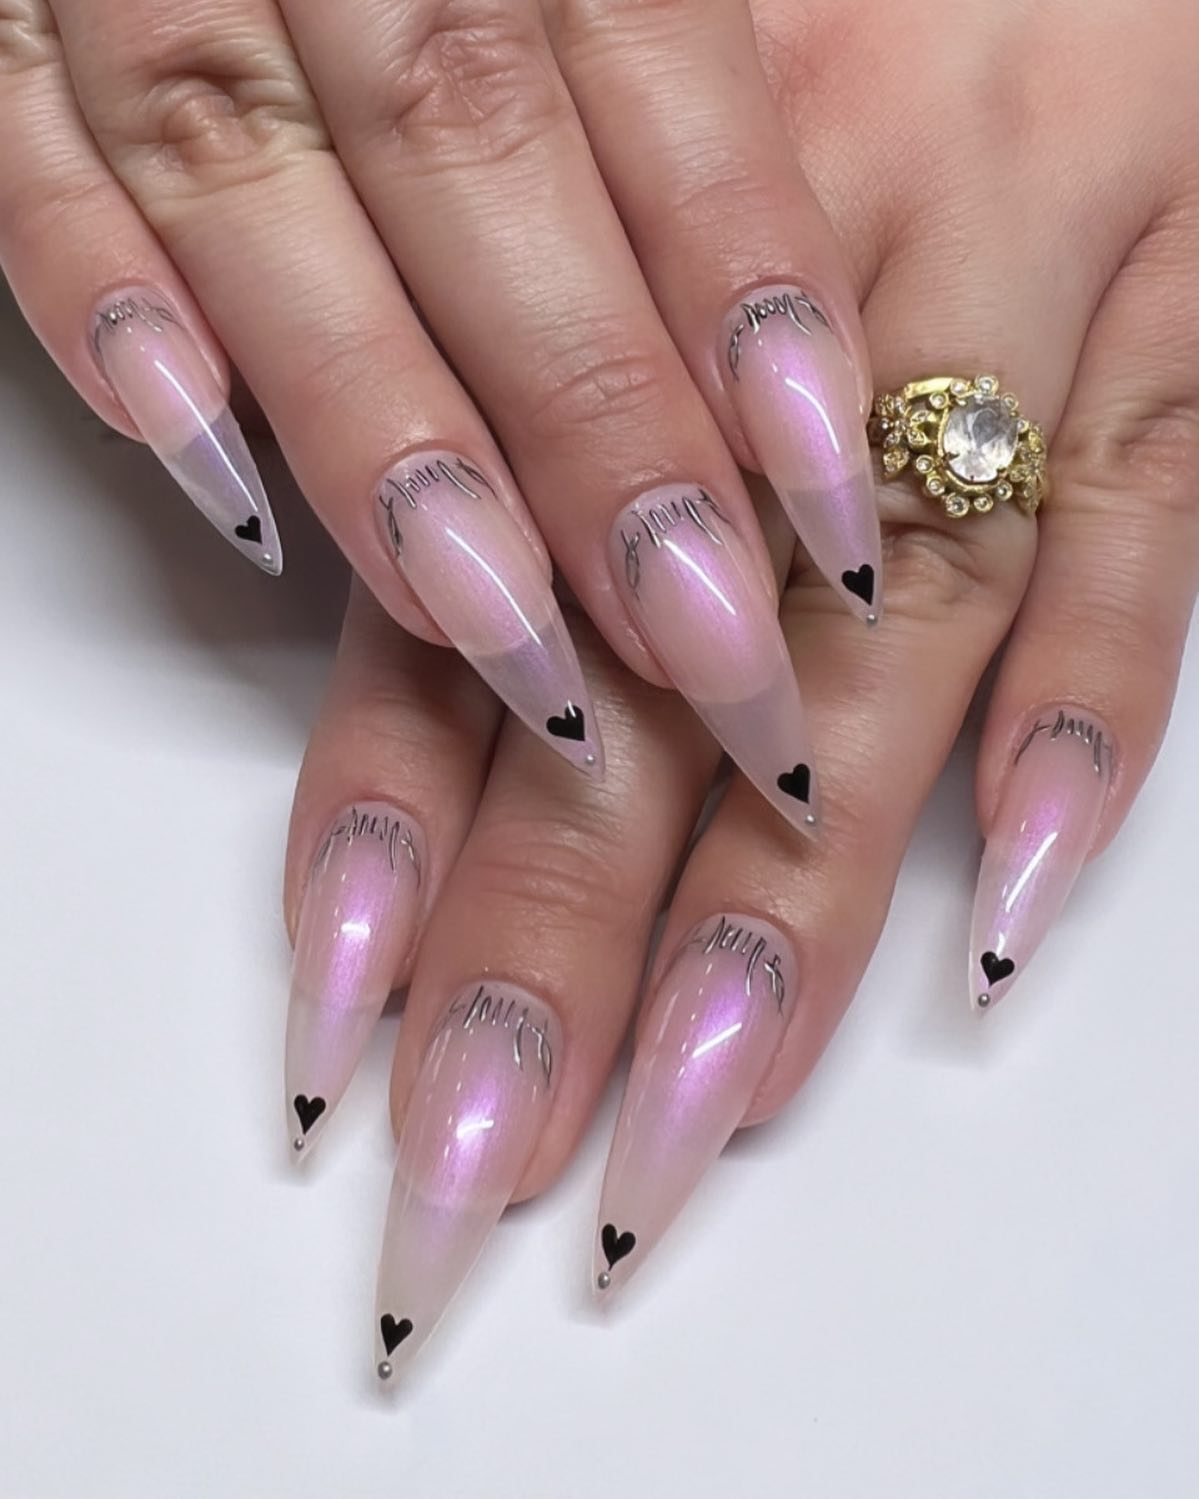 Goth vday nails